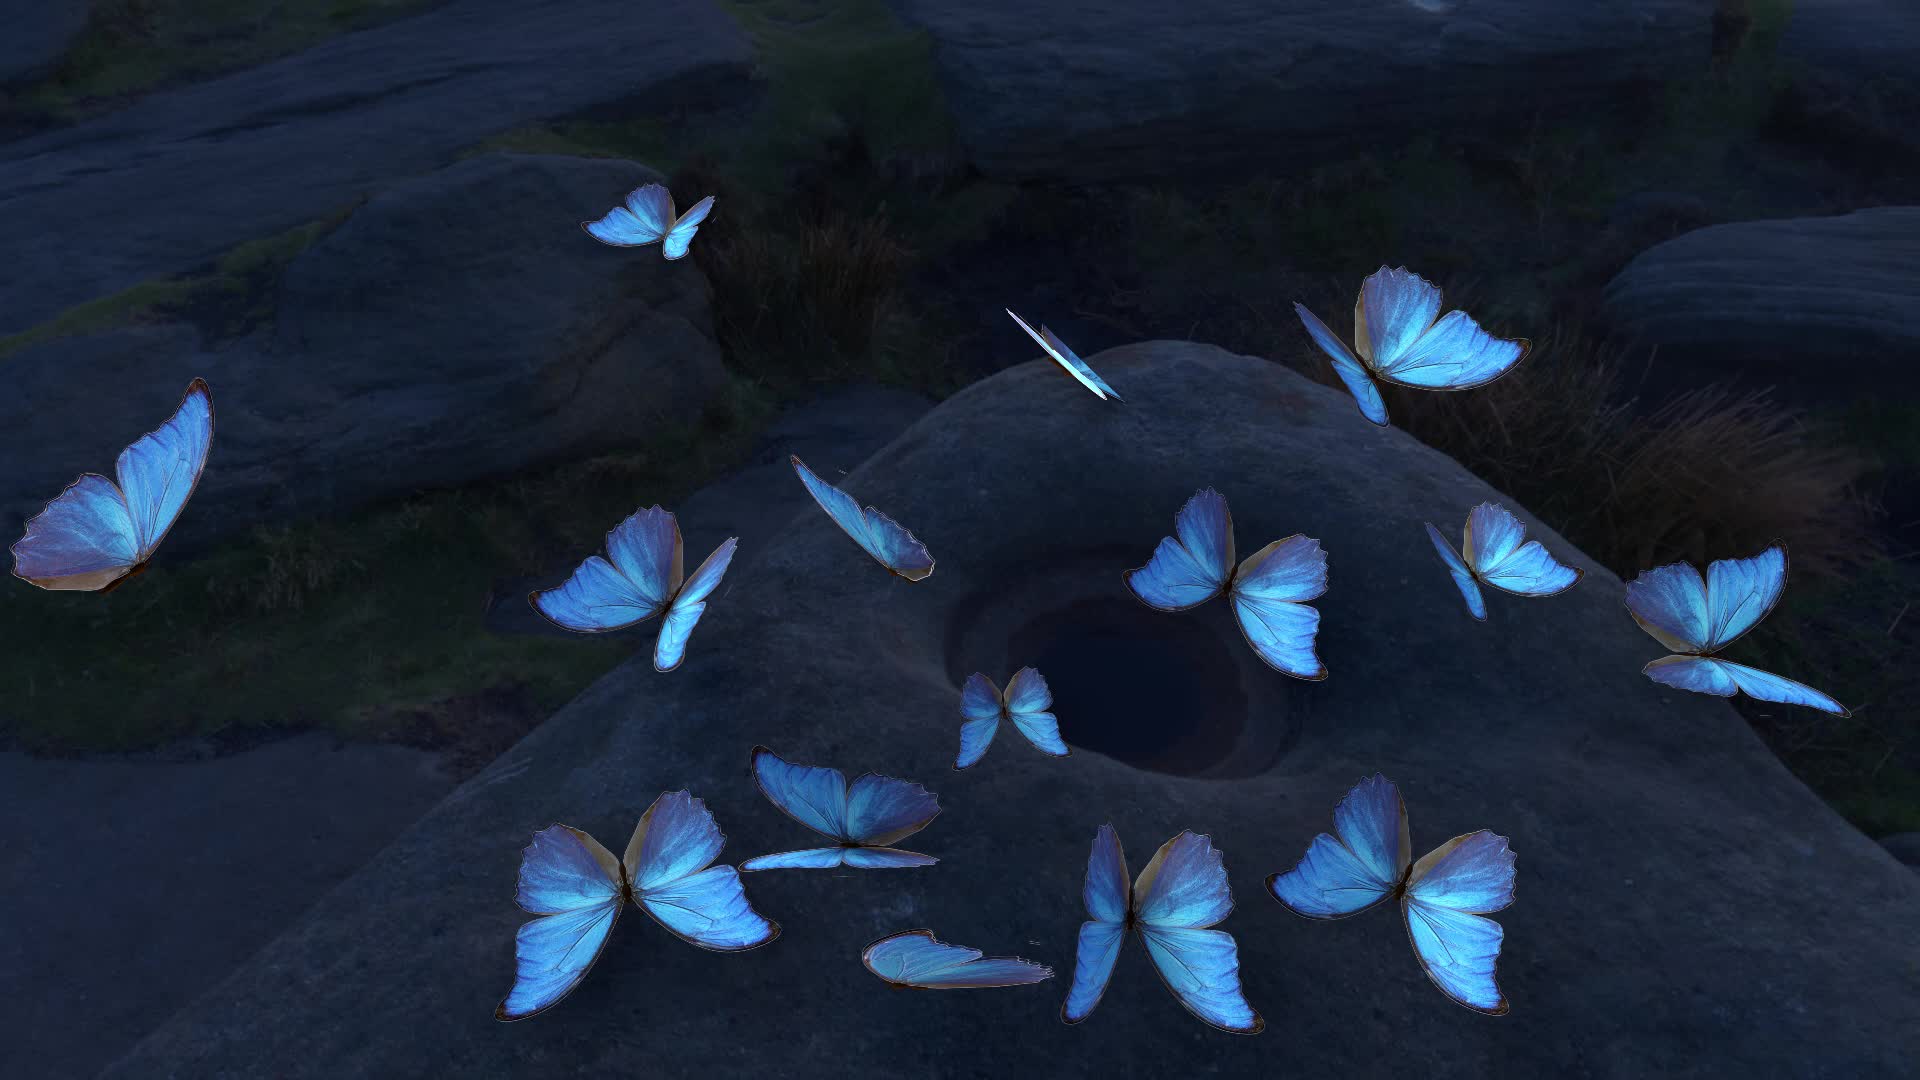 leuchtende-butterfly-hd